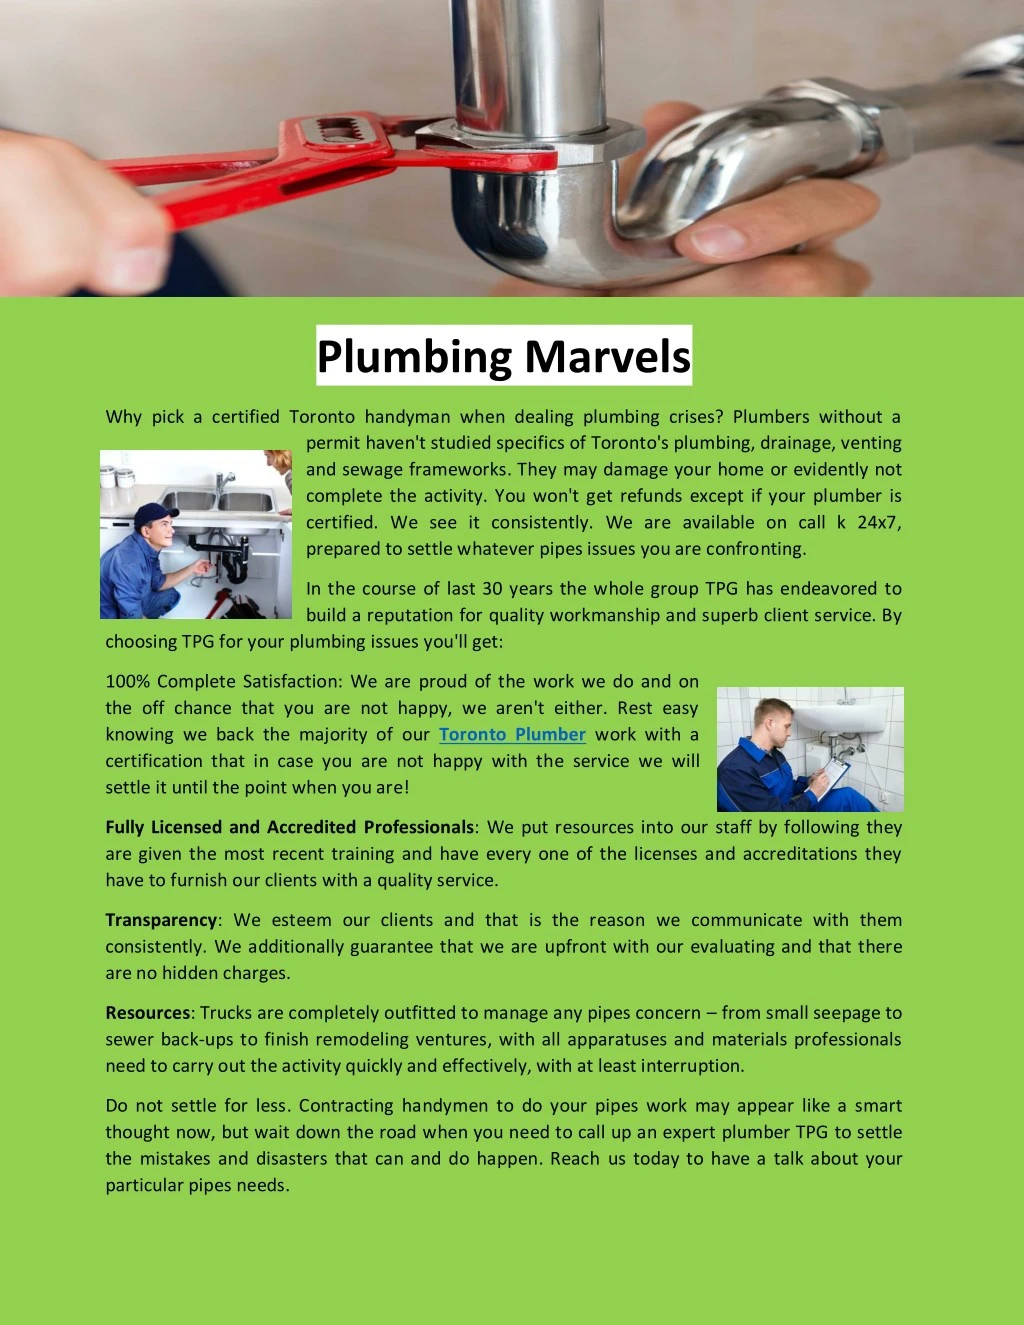 plumbing marvels